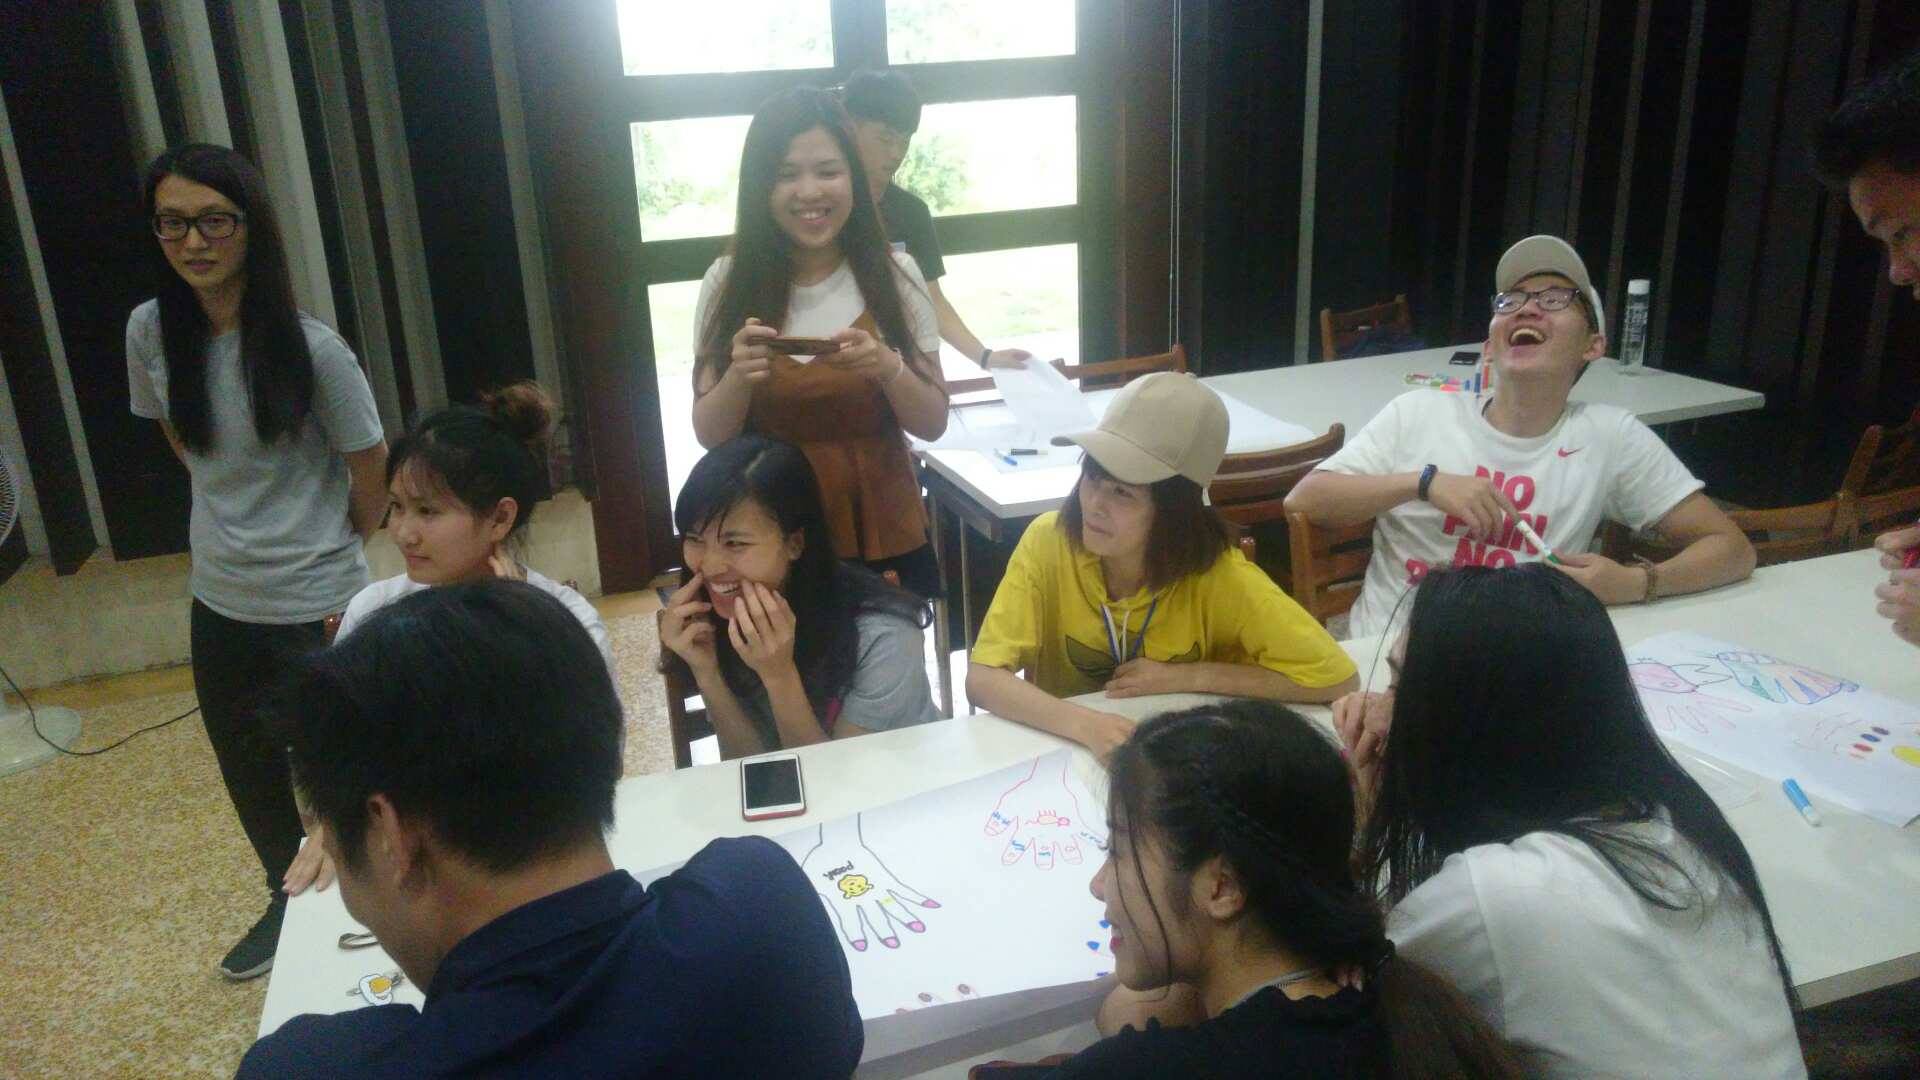 團契學生皆表示越南同學們很熱情大方，大家在輕鬆的氣氛下學習華語文，相處愉快；彼此也互相學習著不同的文化